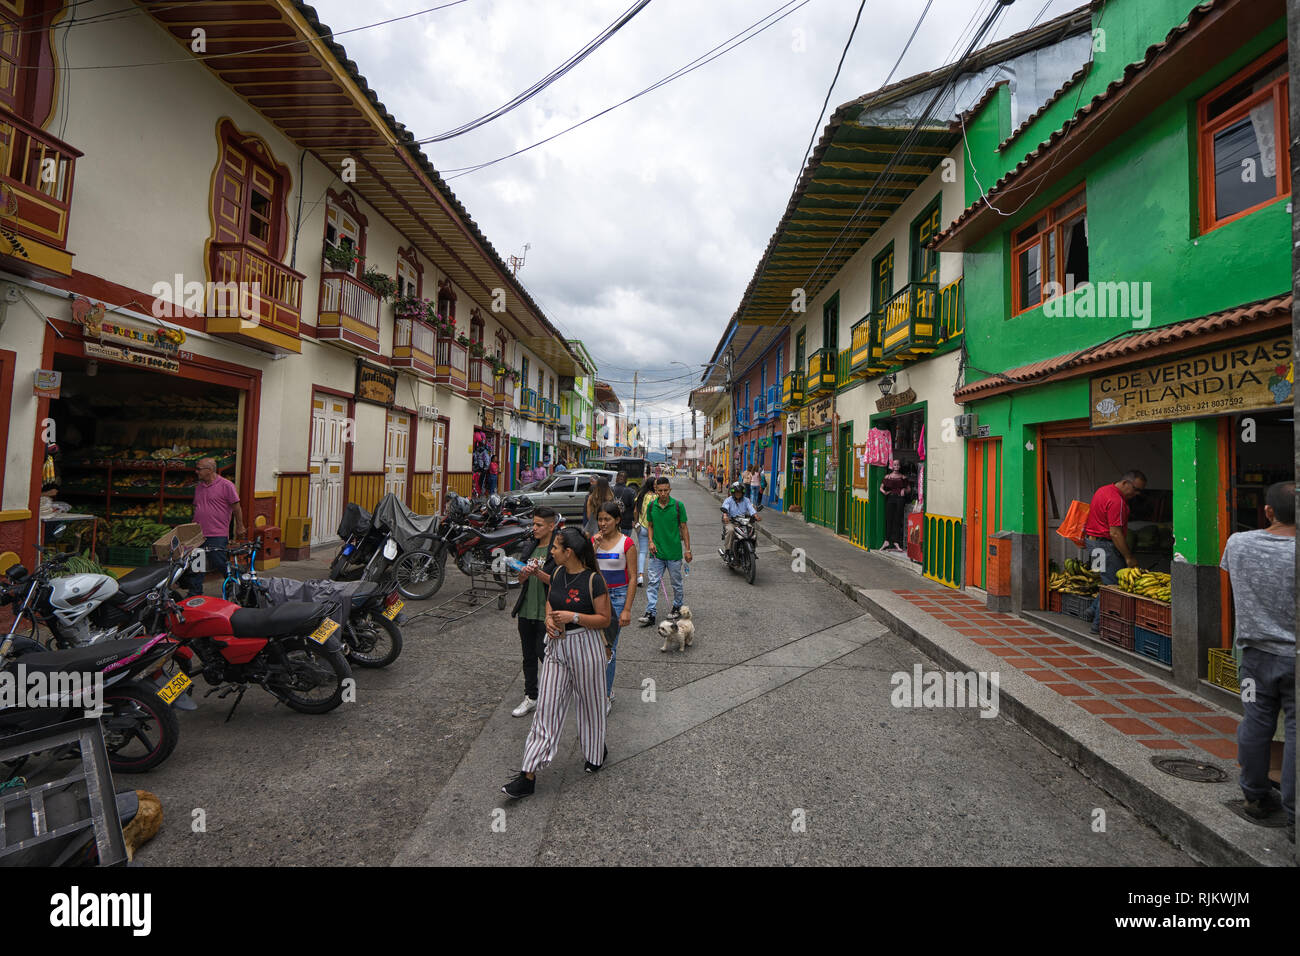 Filandia, Kolumbien - 9. September 2018: Touristen zu Fuß auf der Straße von bunten Häuser im Zentrum der Stadt flankiert Stockfoto